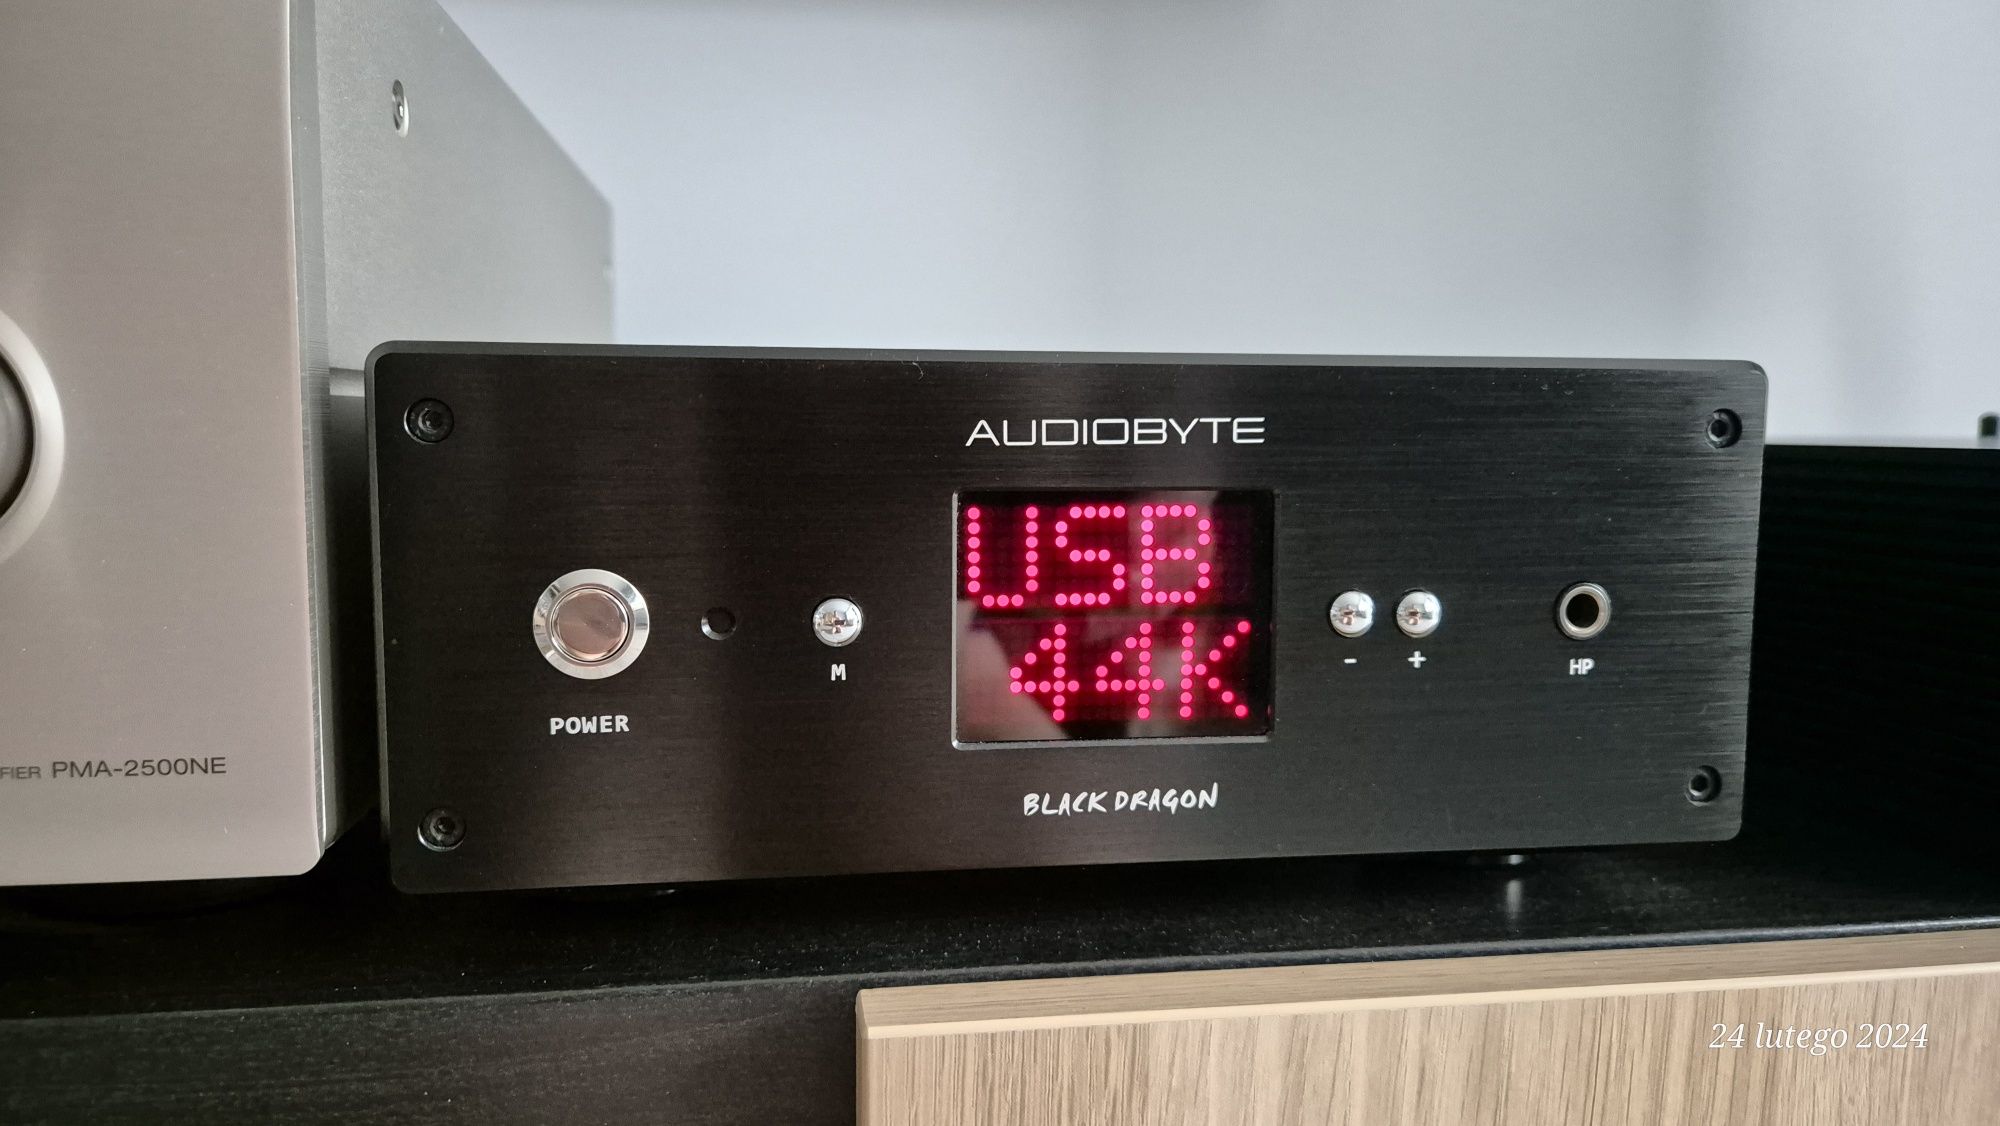 Audiobyte Black Dragon przetwornik DAC wzmacniacz słuchawkowy